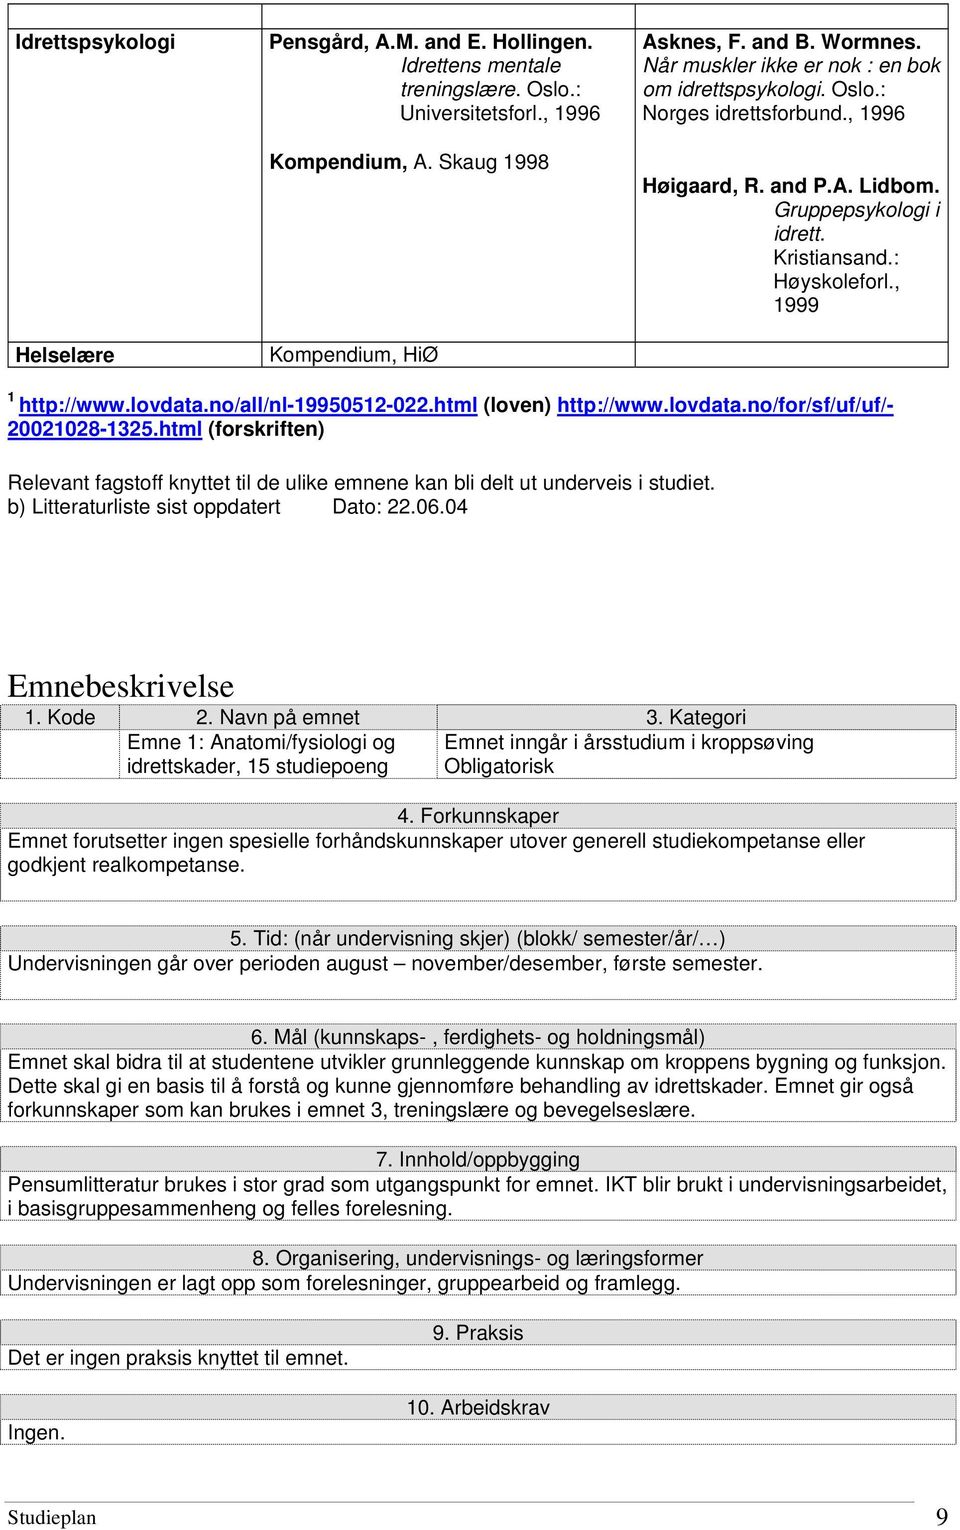 lovdata.no/all/nl-19950512-022.html (loven) http://www.lovdata.no/for/sf/uf/uf/- 20021028-1325.html (forskriften) Relevant fagstoff knyttet til de ulike emnene kan bli delt ut underveis i studiet.